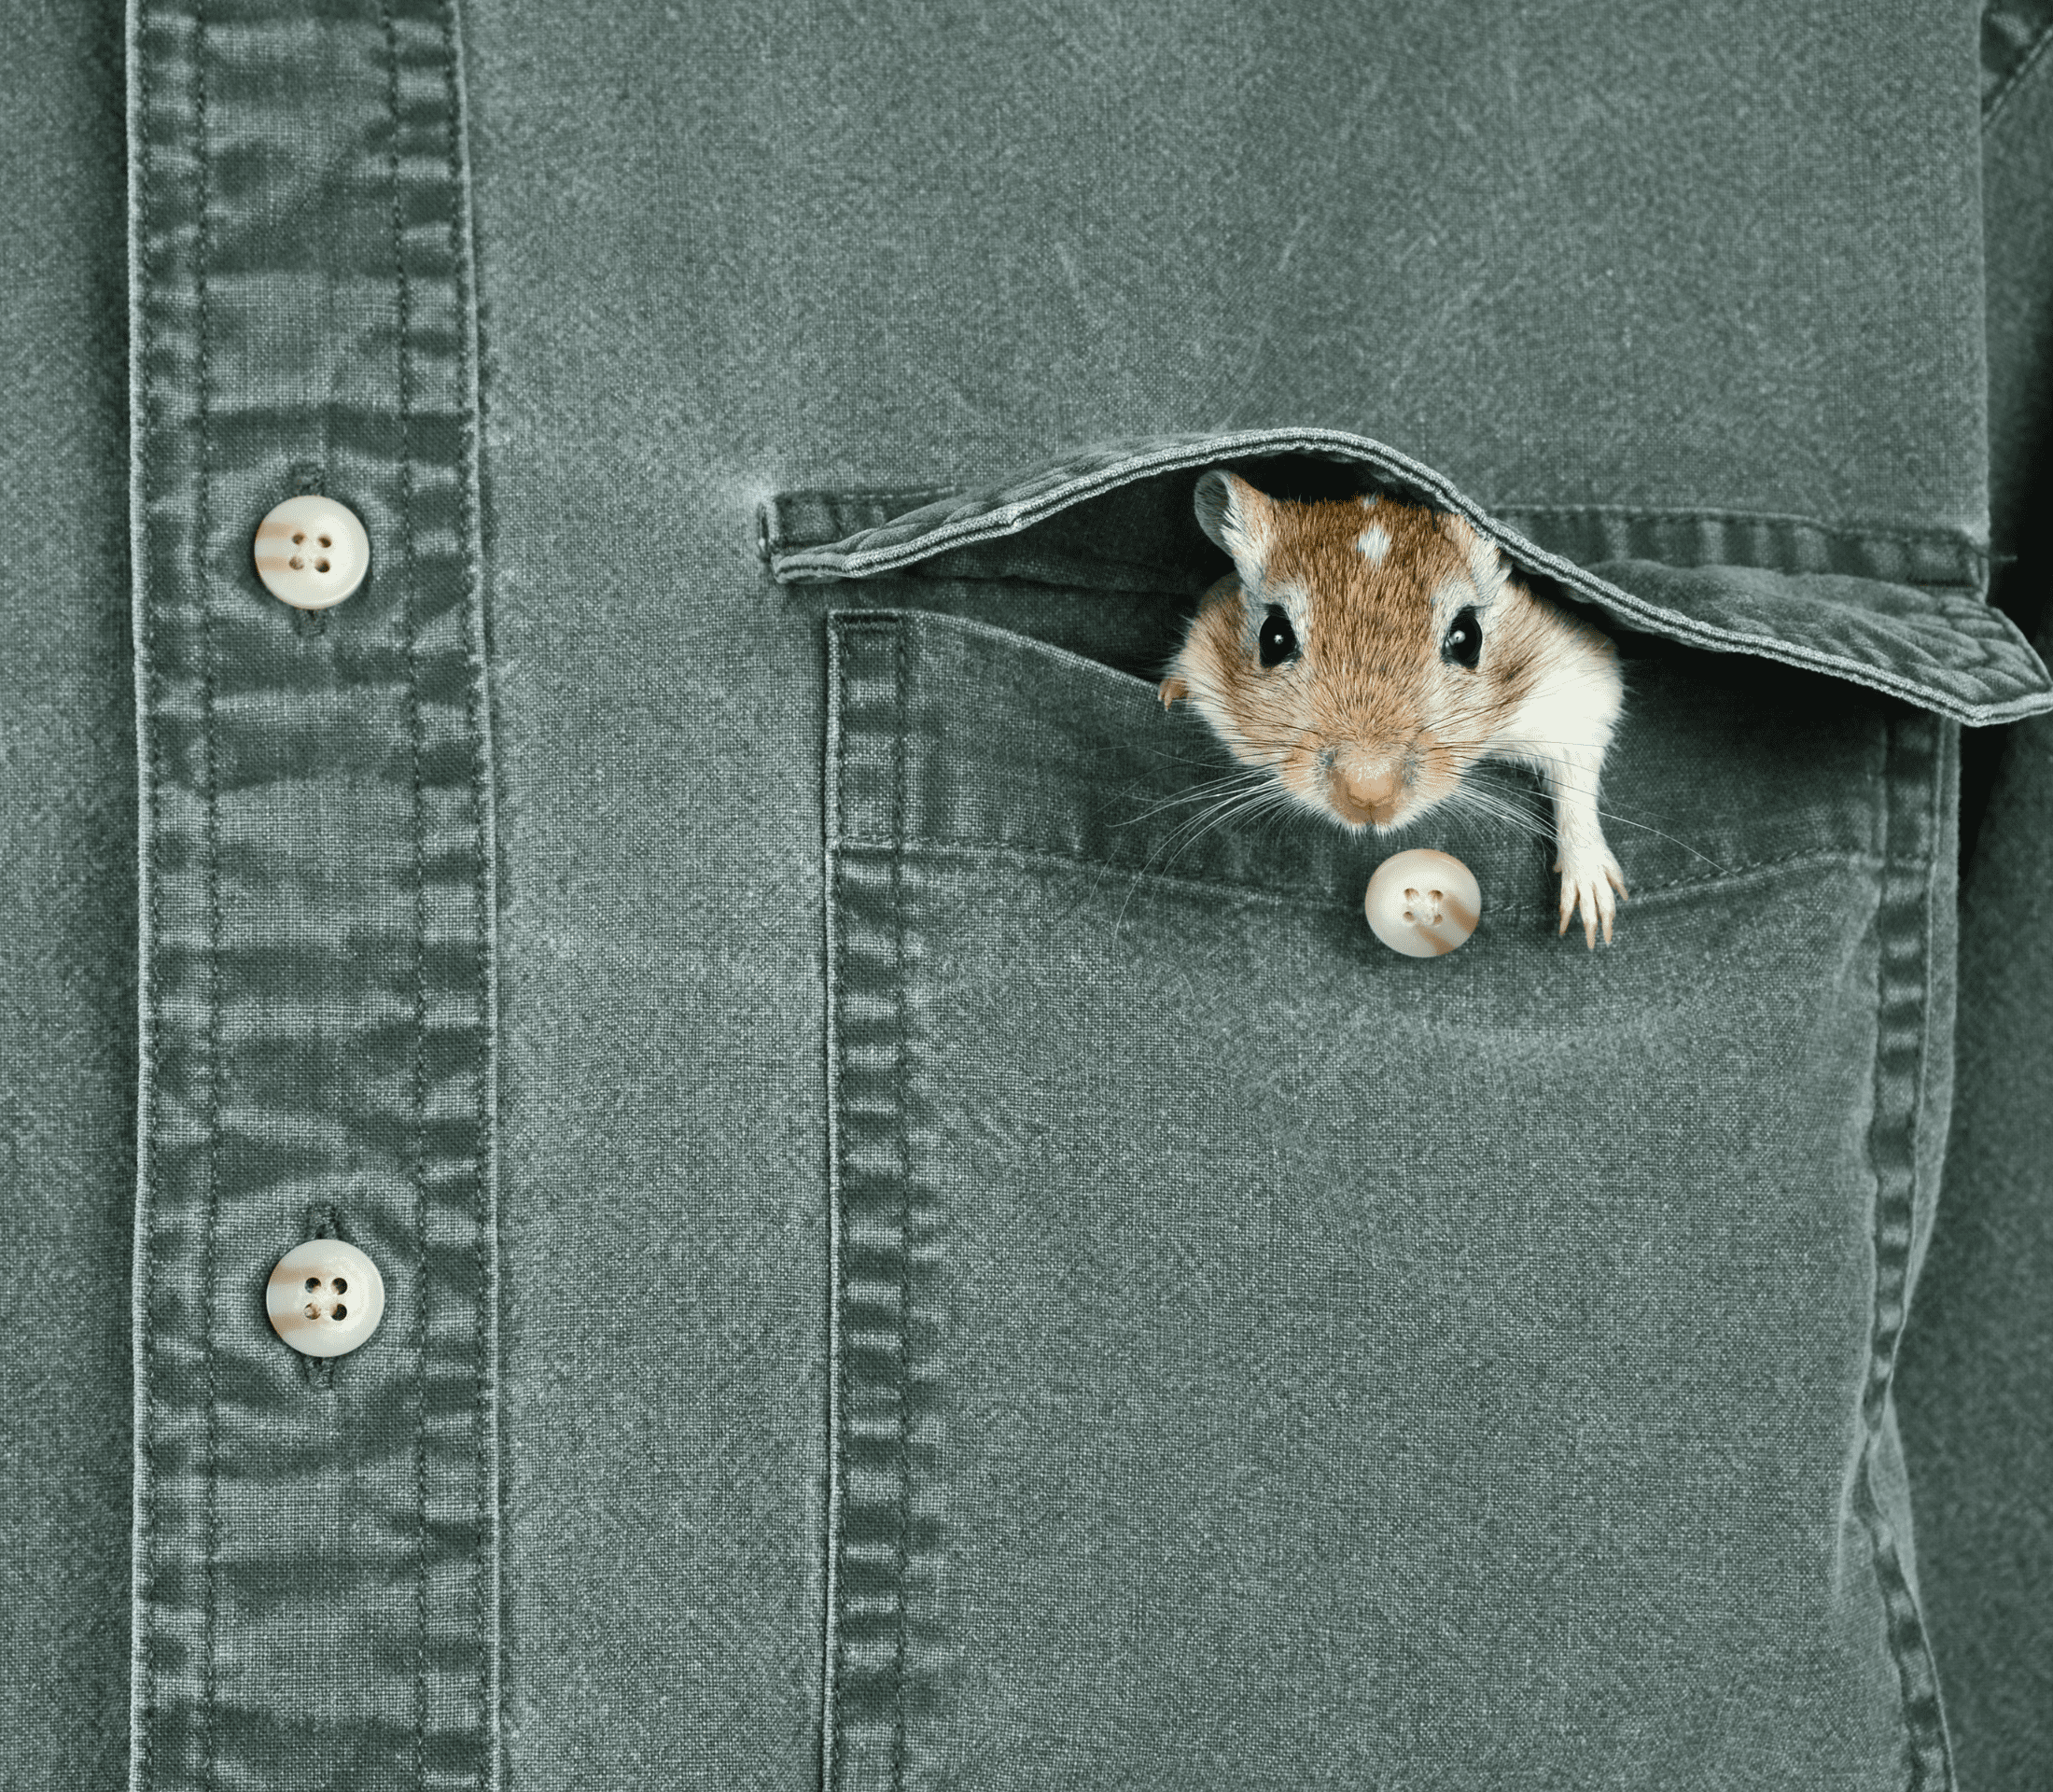 Small brown gerbill peeking from a shirt pocket